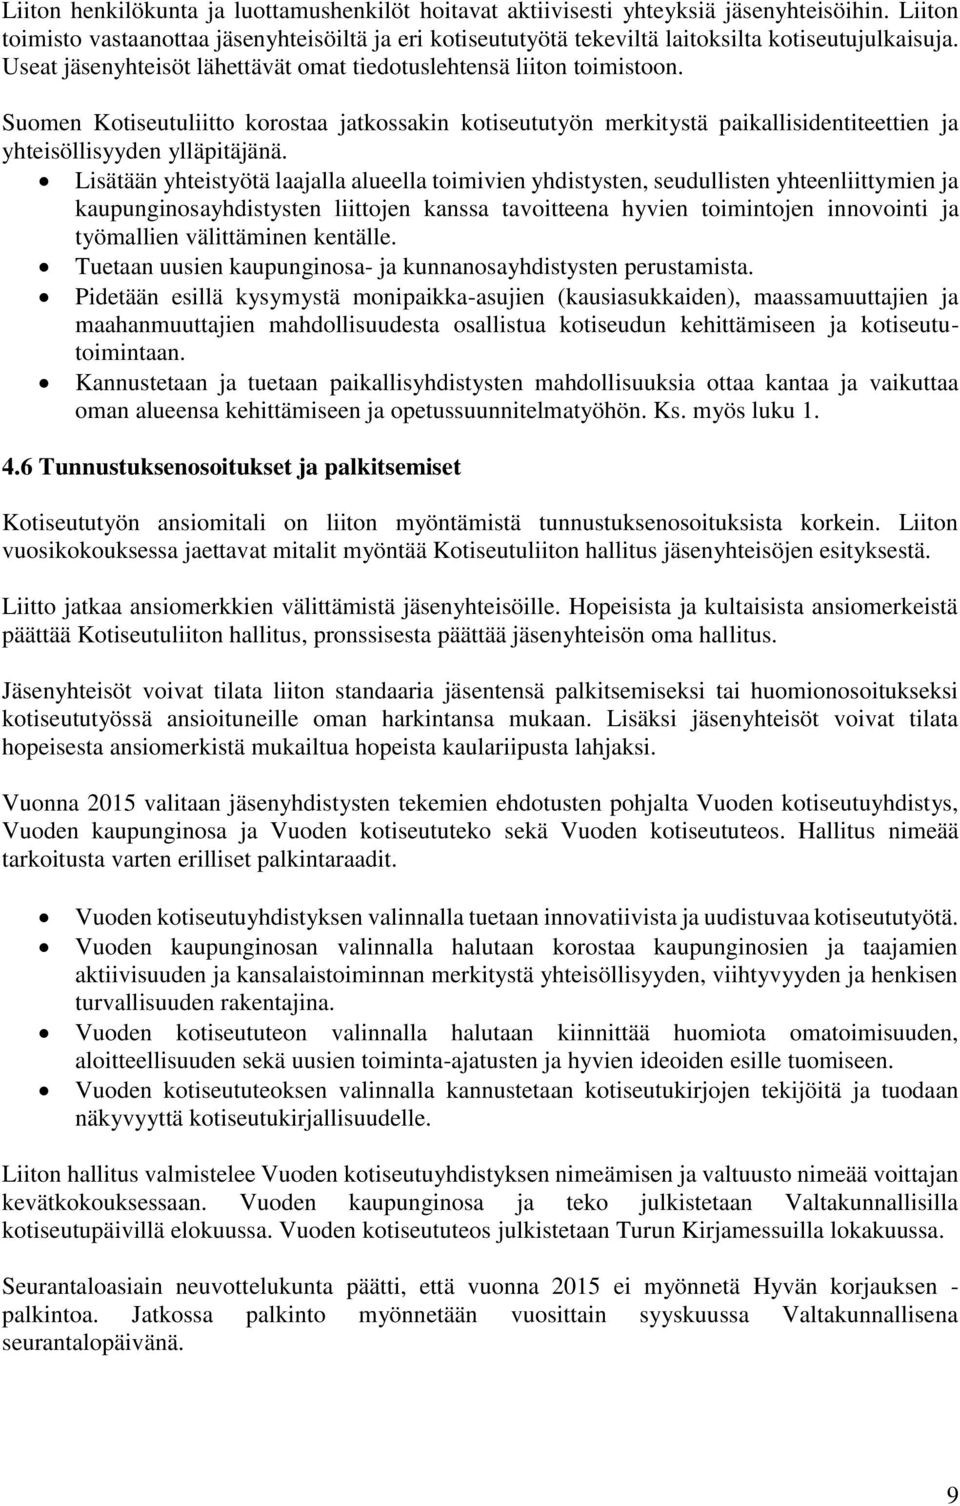 Suomen Kotiseutuliitto korostaa jatkossakin kotiseututyön merkitystä paikallisidentiteettien ja yhteisöllisyyden ylläpitäjänä.